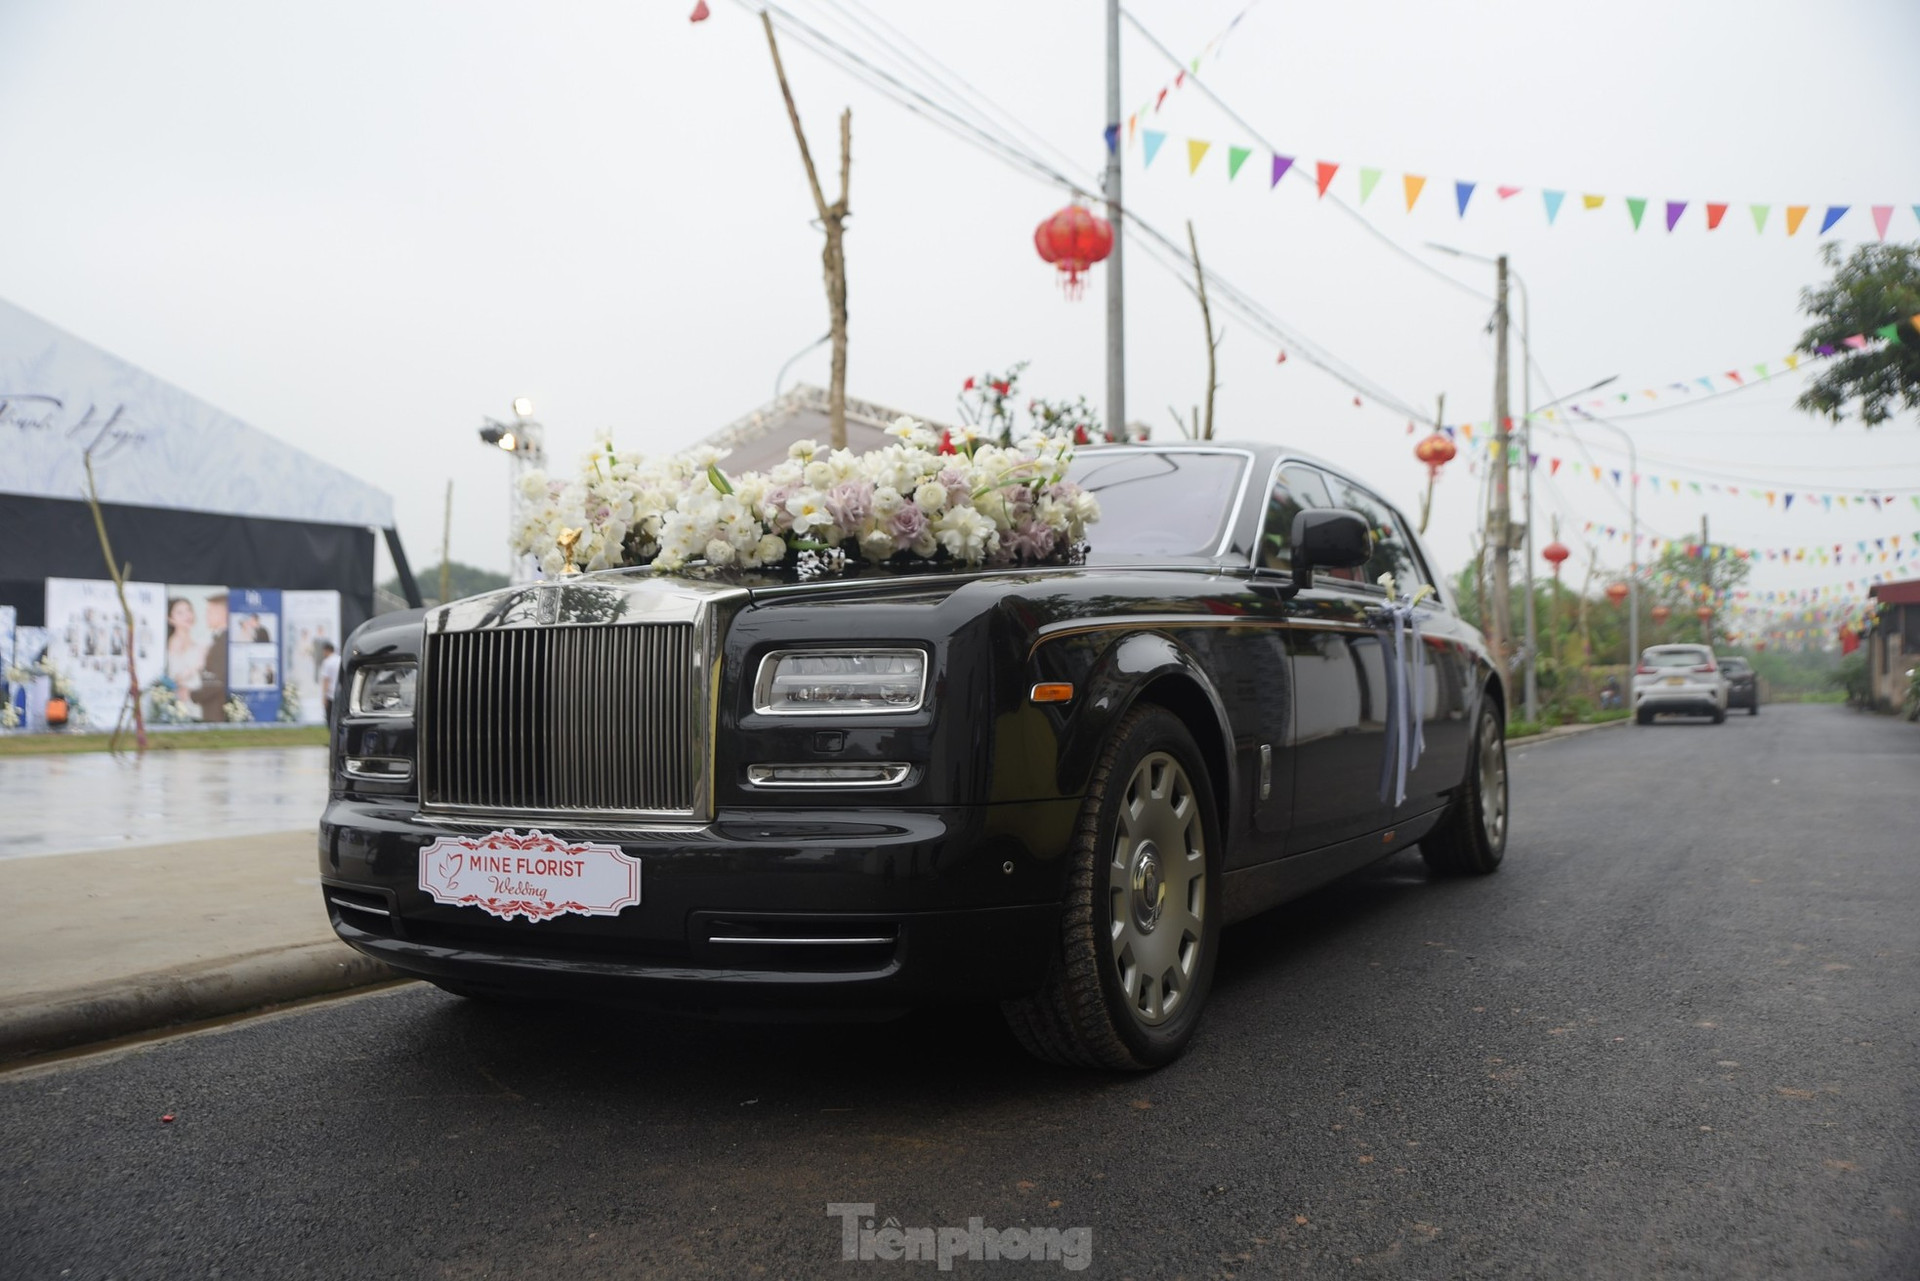 Quang Hải dùng xe 16 tỷ đồng đón cô dâu Chu Thanh Huyền ảnh 3